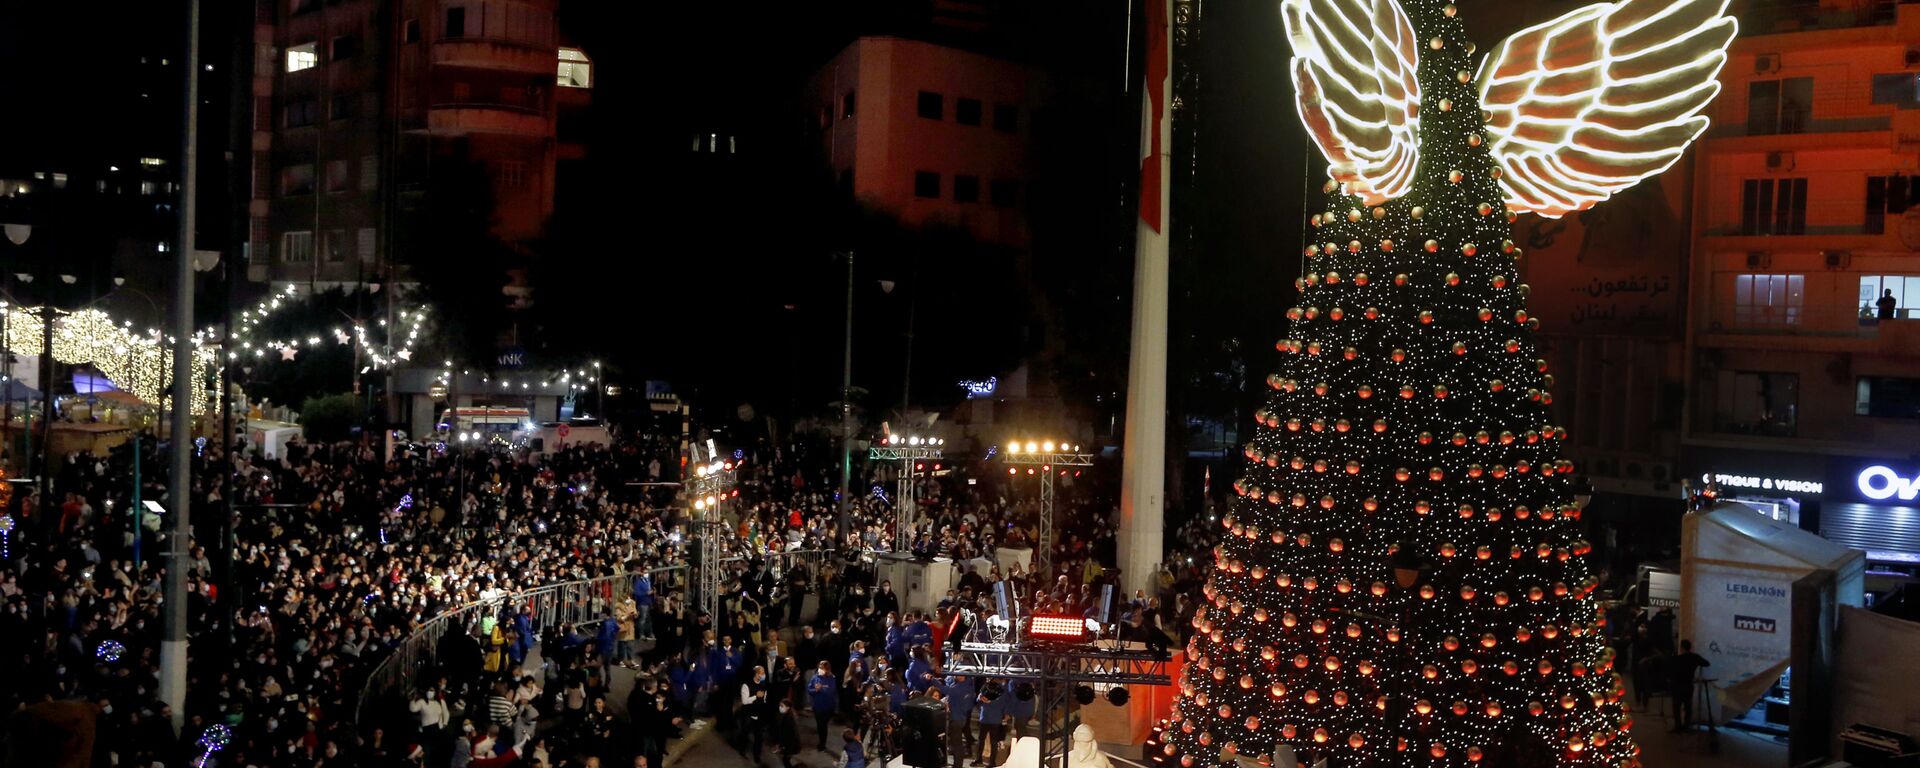 Рождественская елка с крылышками в Бейруте, Ливан - Sputnik Латвия, 1920, 24.12.2021